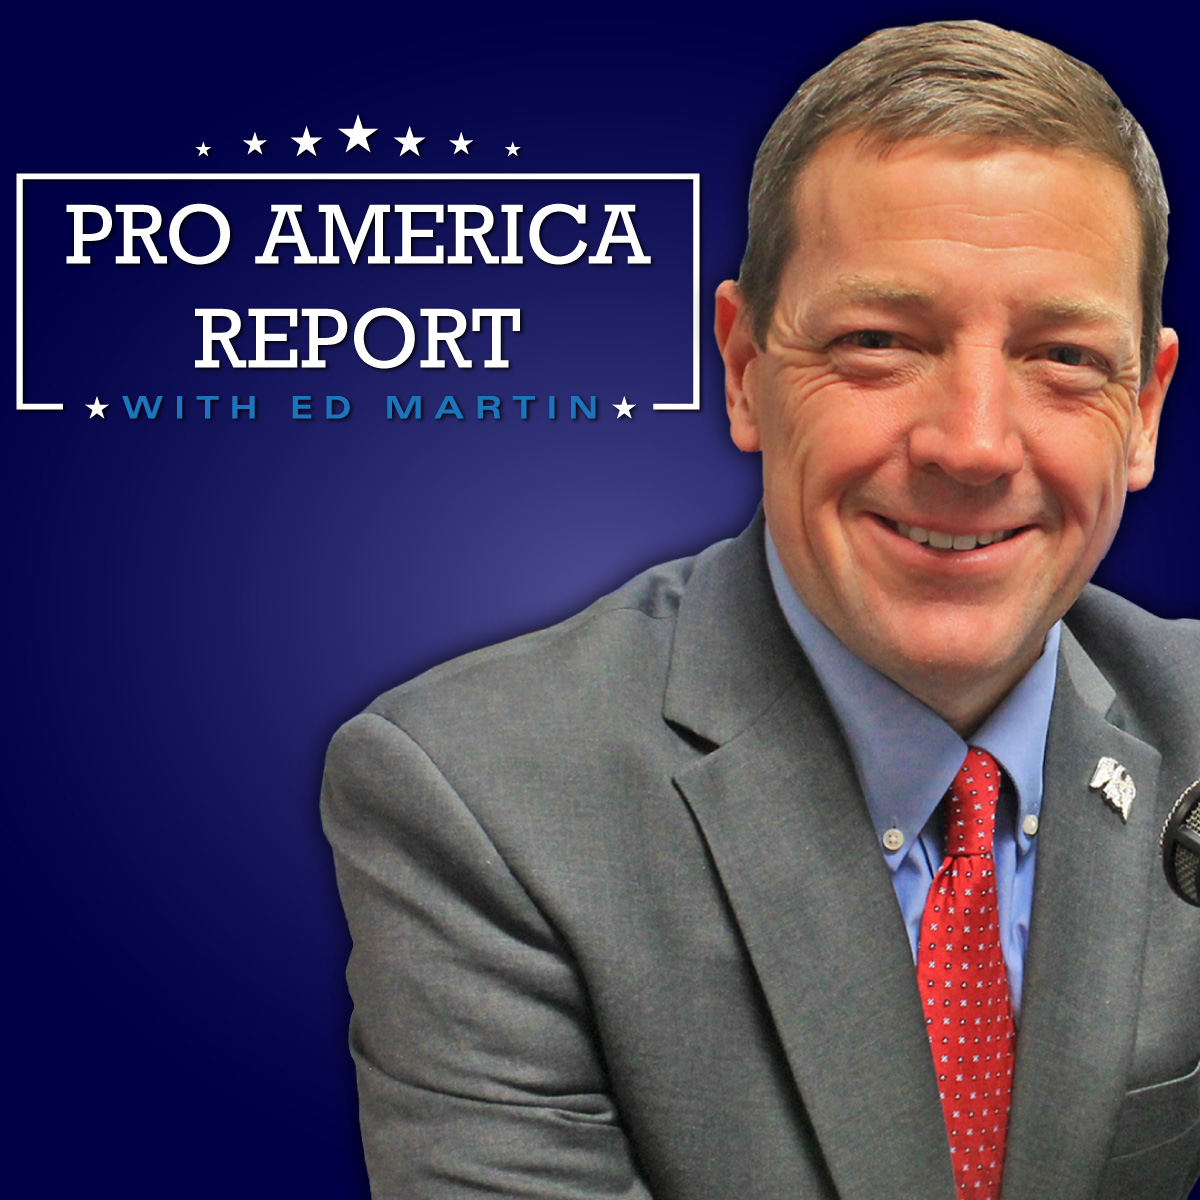 The Pro America Report Ed Martin 05.08.2020